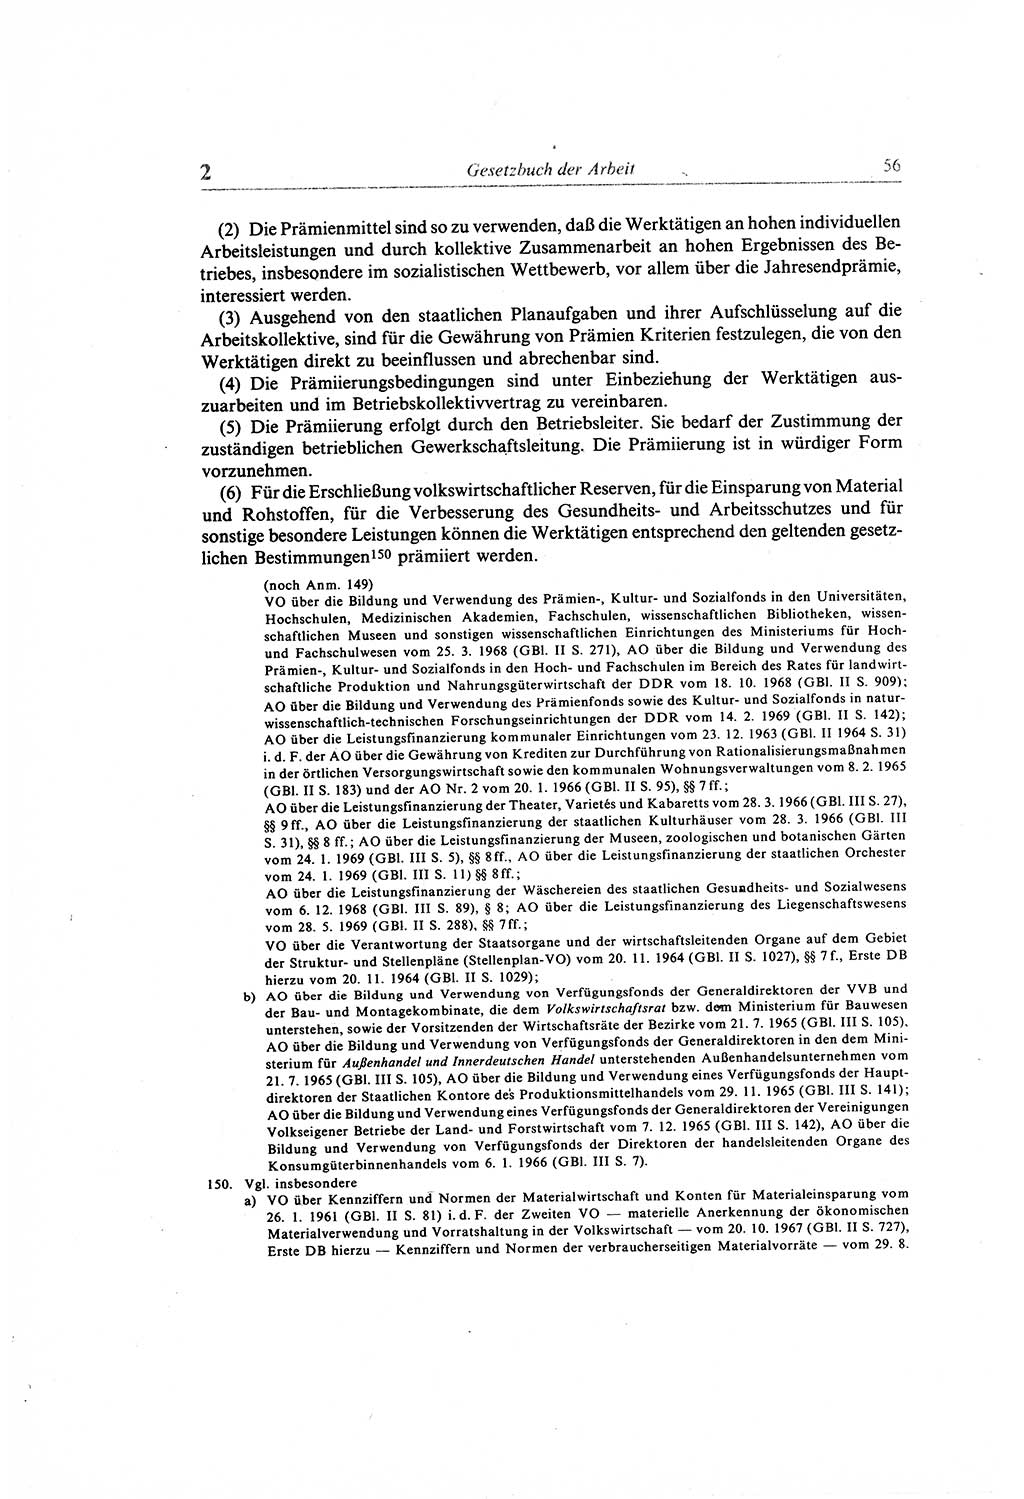 Gesetzbuch der Arbeit (GBA) und andere ausgewählte rechtliche Bestimmungen [Deutsche Demokratische Republik (DDR)] 1968, Seite 56 (GBA DDR 1968, S. 56)